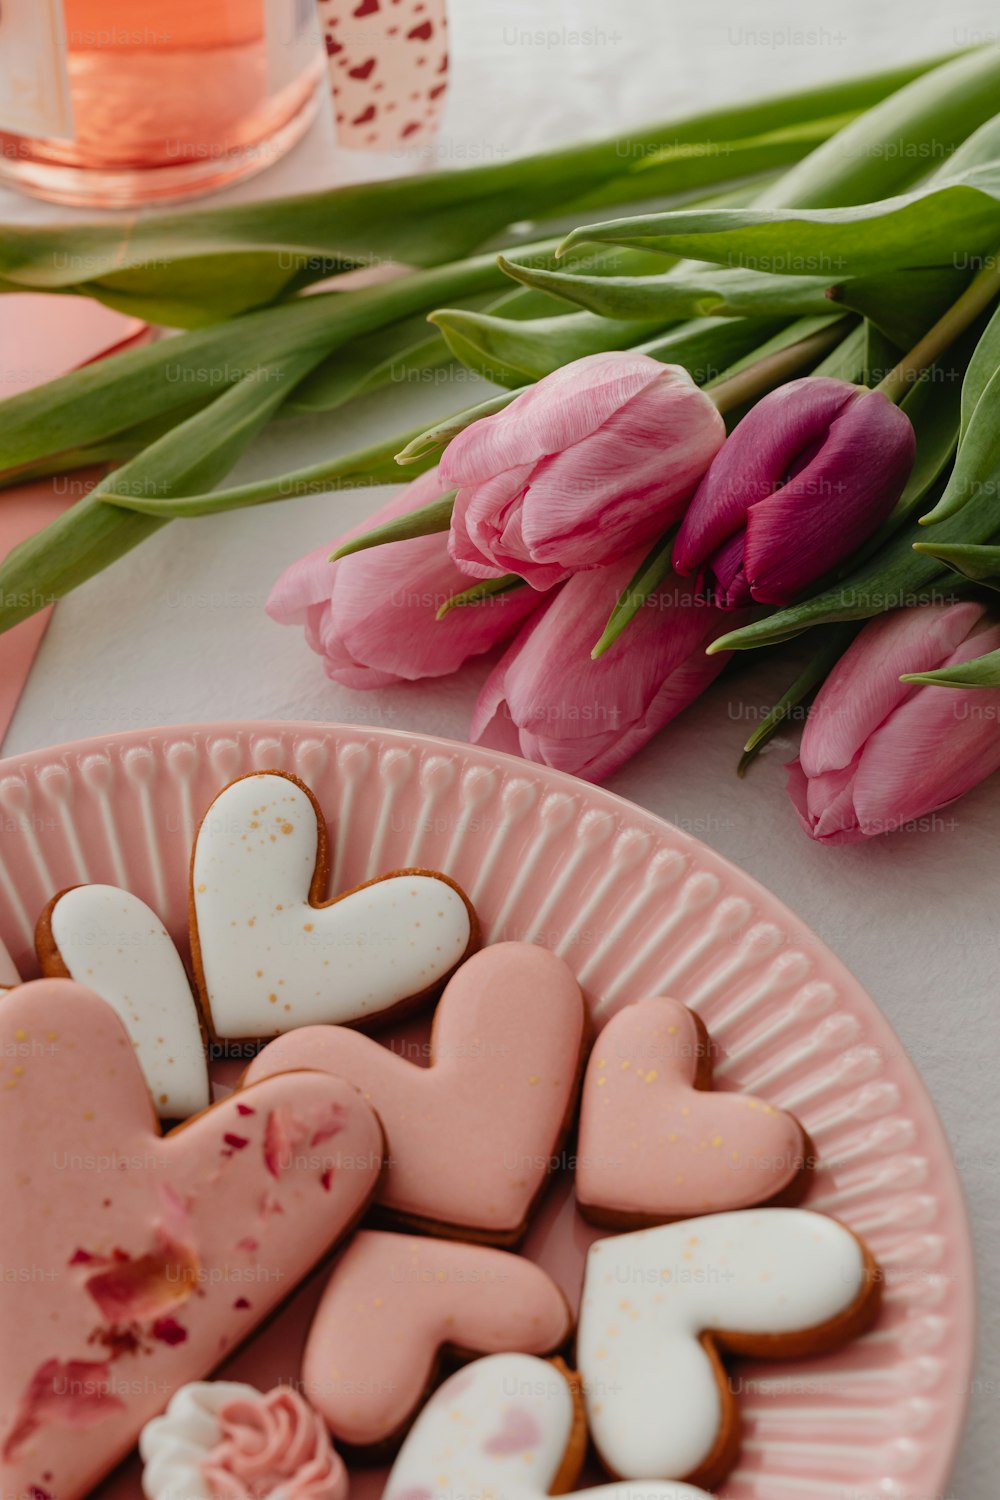 Un plato de galletas en forma de corazón junto a tulipanes rosados